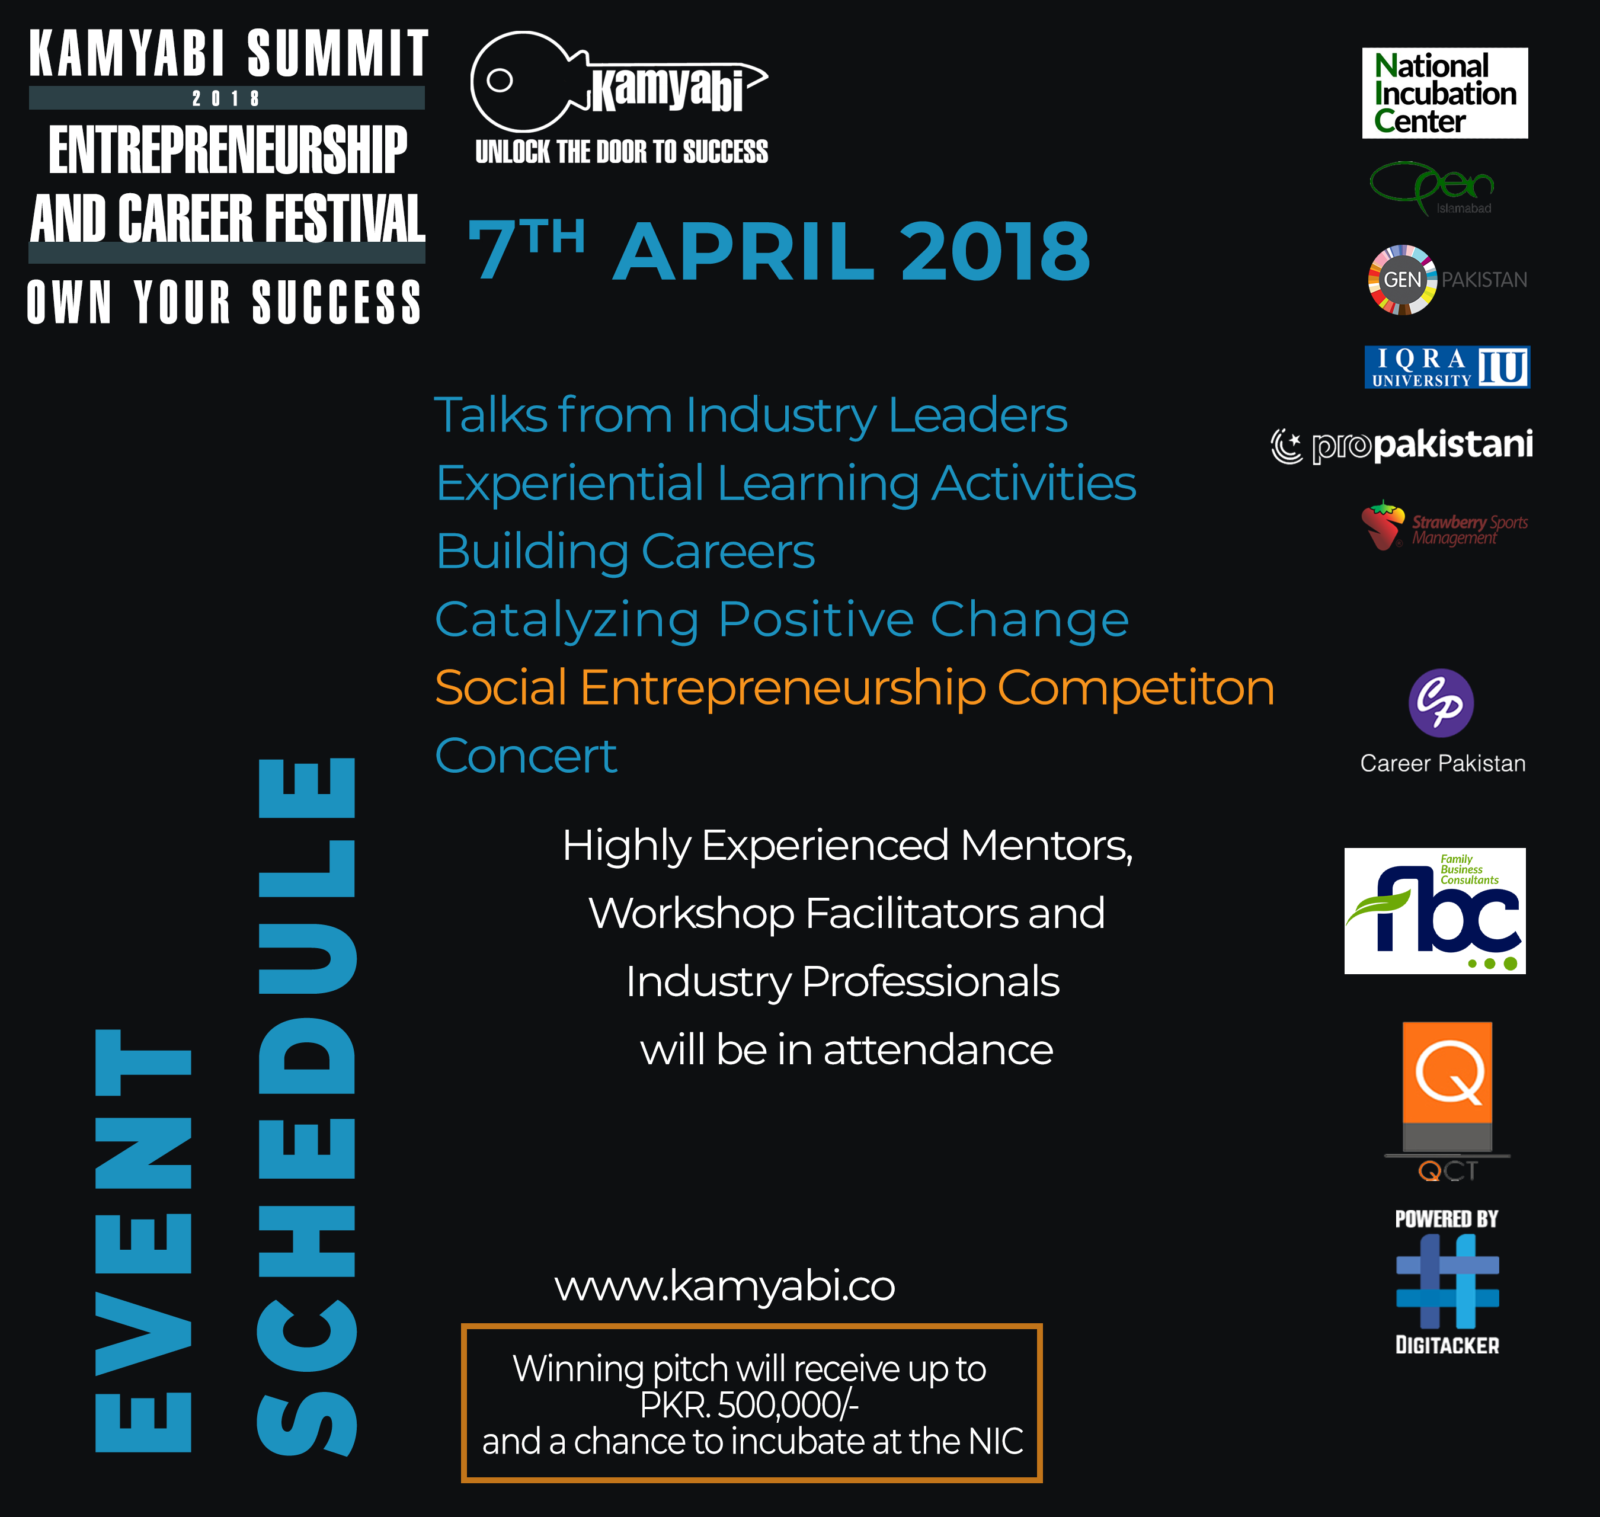 Kamyabi summit event schedule